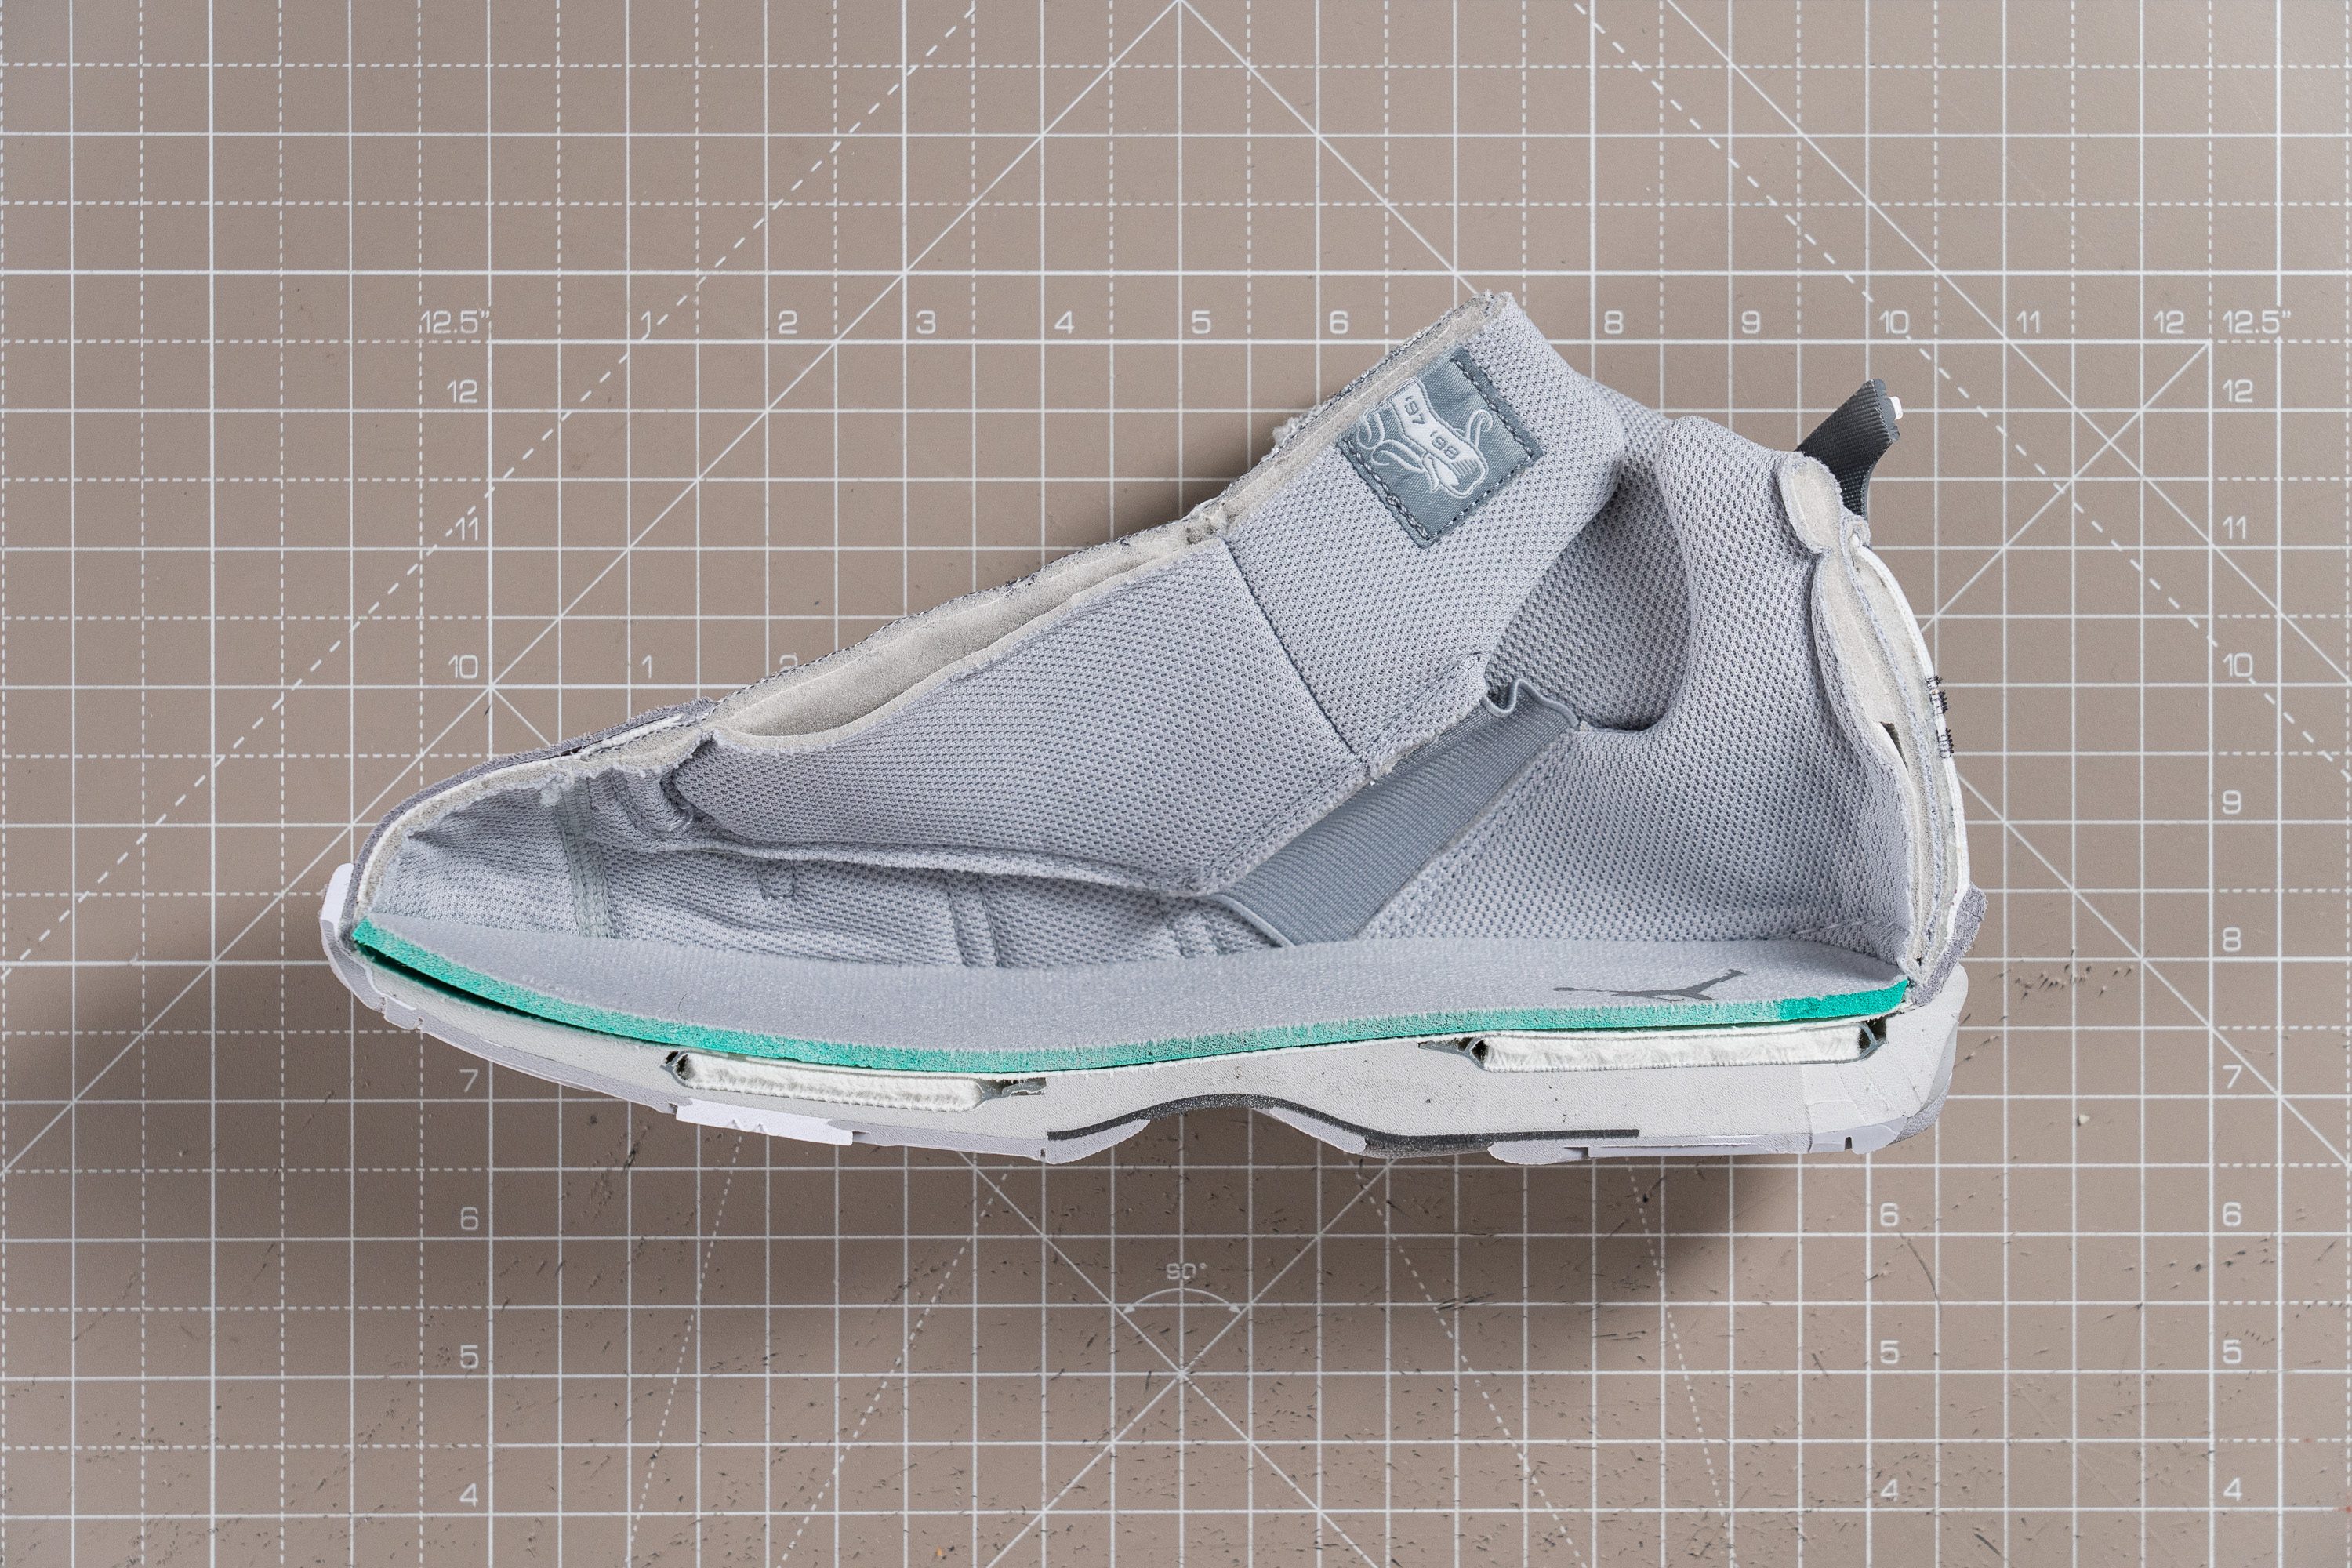 Update 15.12.2022 Die ersten Fotos des Air Jordan 5 SE Craft wurden jetzt auf Instagram Drop